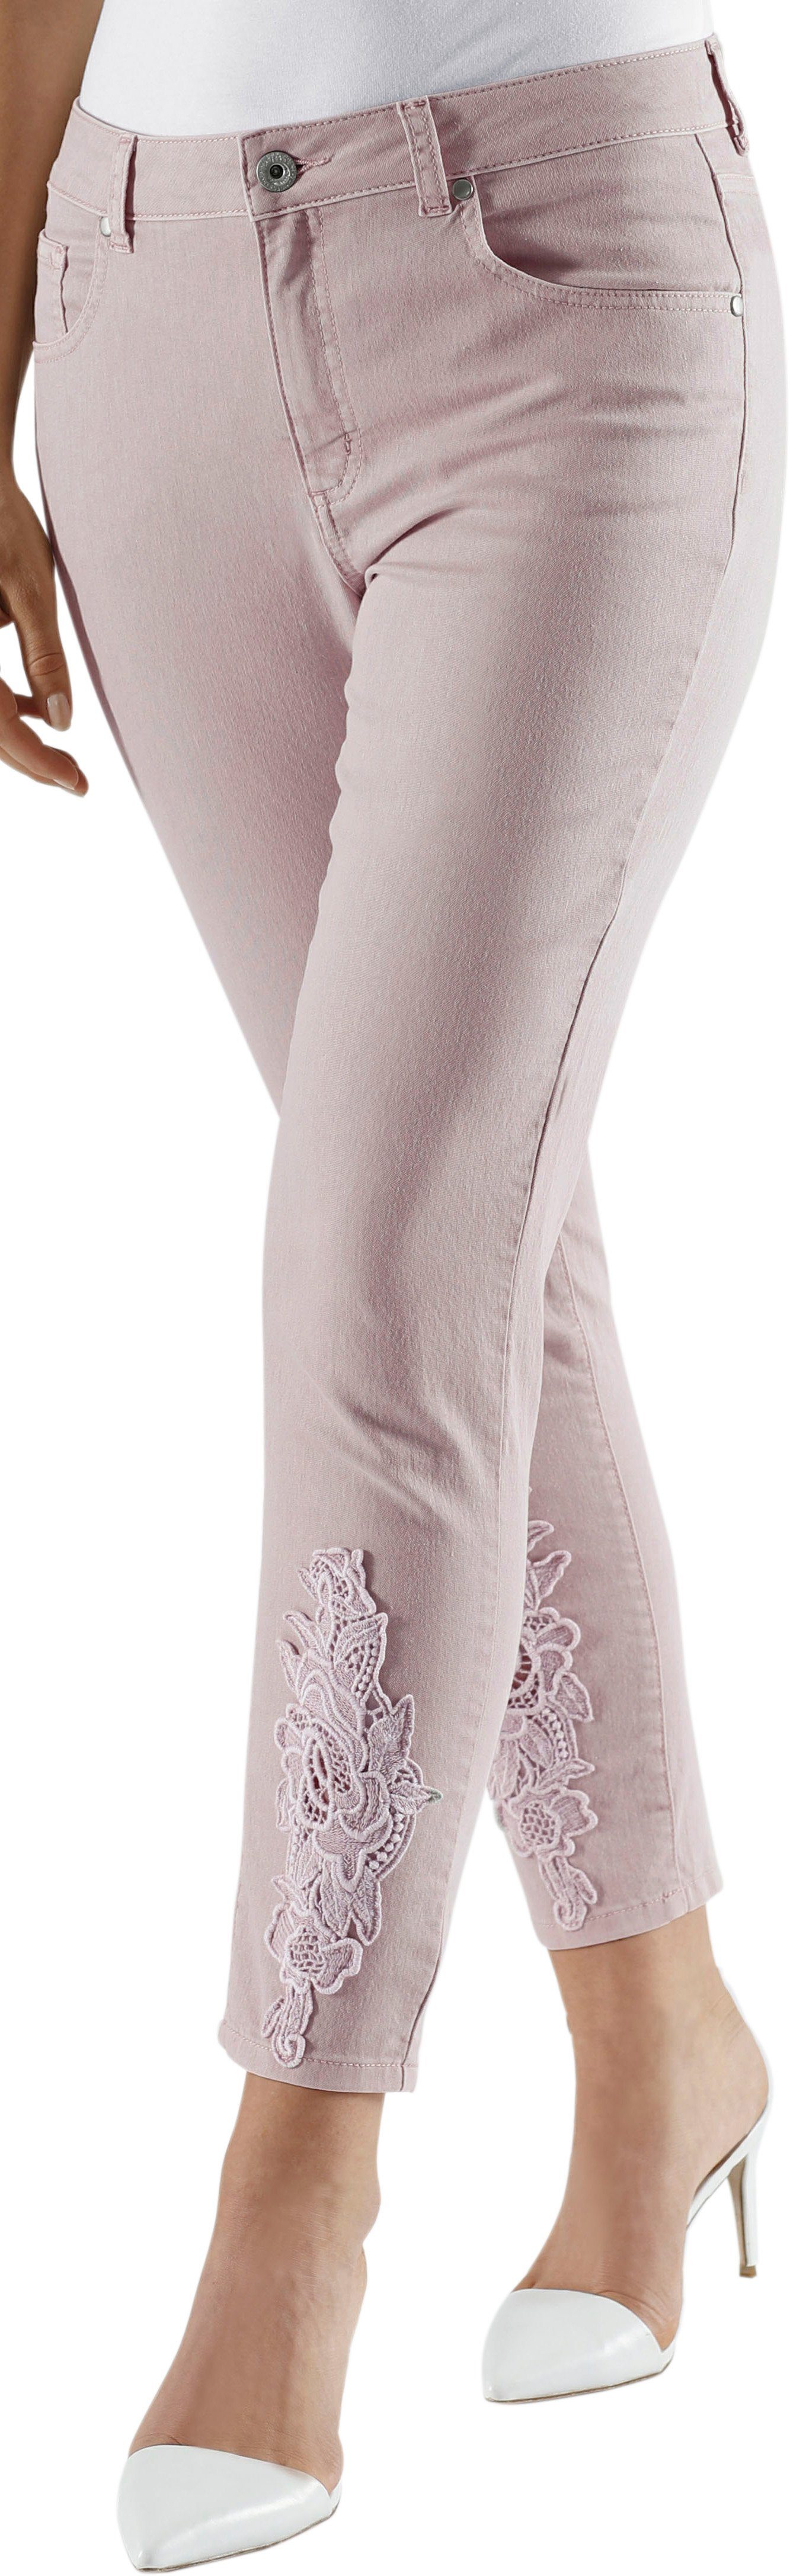 Fair Lady NU 15% KORTING: Fair Lady 7/8-broek in elastische jeanskwaliteit